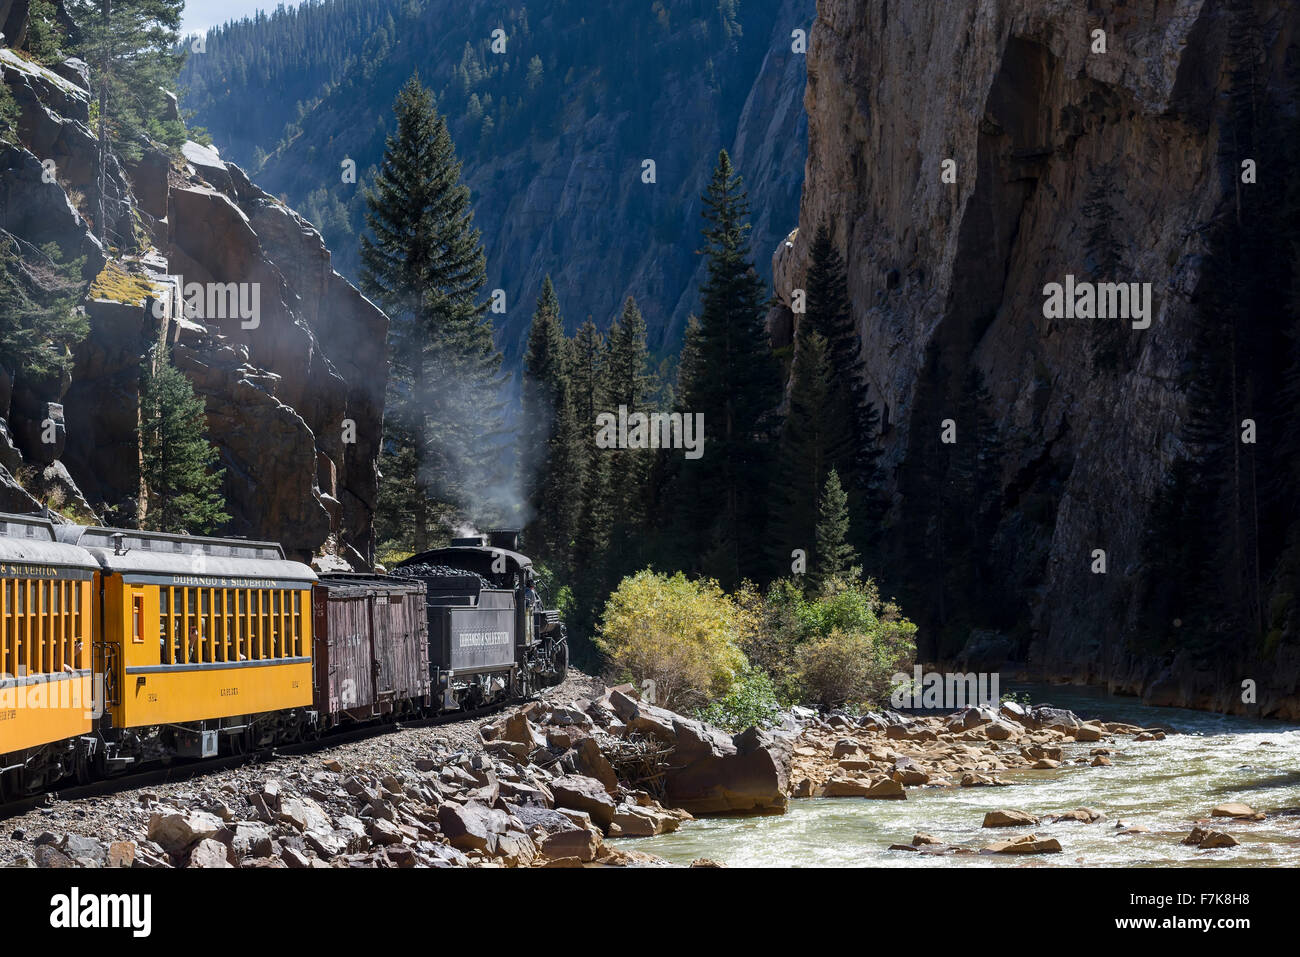 Durango & Silverton Narrow Gauge Railroad steam train in the Animas River Canyon in Southwest Colorado. Stock Photo